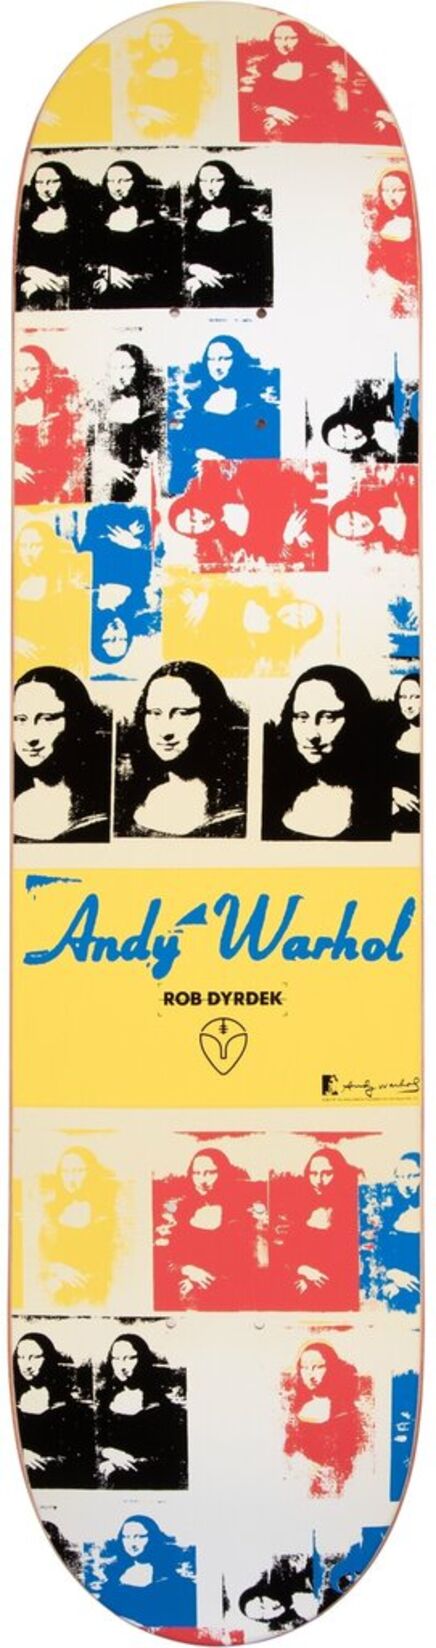 Andy Warhol, ‘Mona Lisa’, 2010